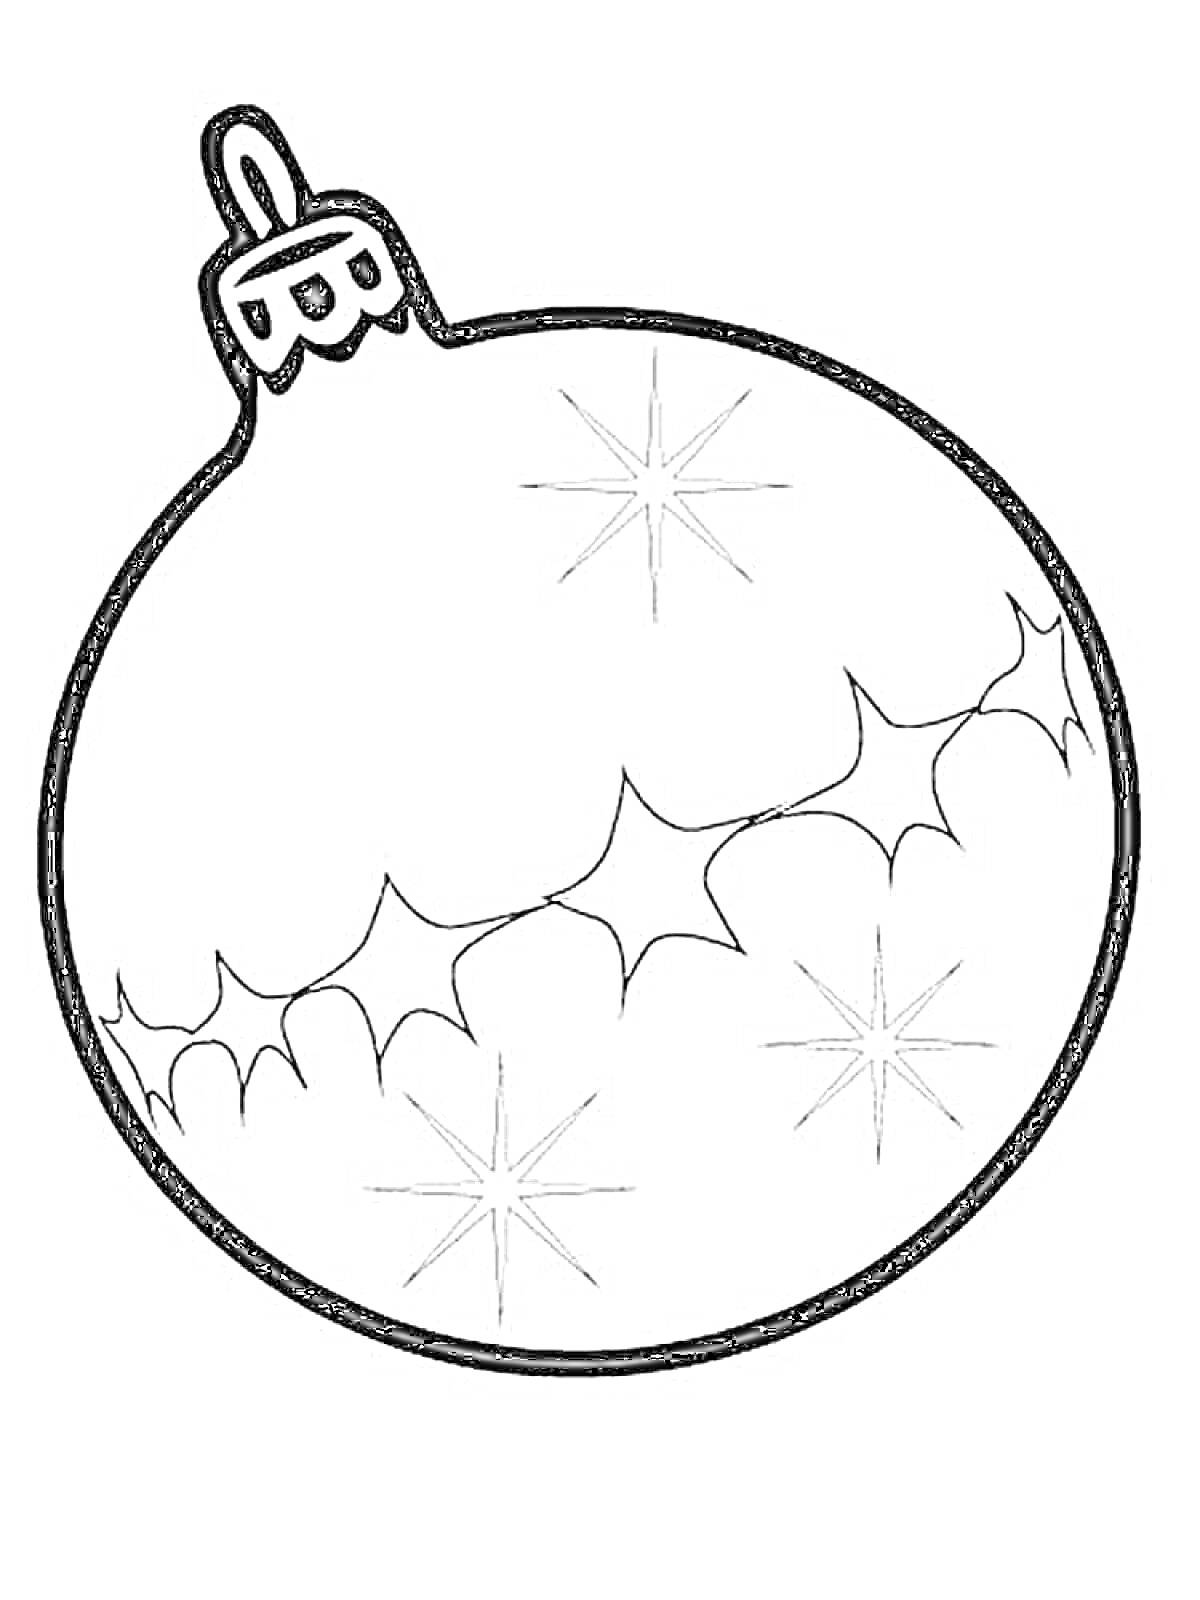 новогодний шар с узором из снежинок и зимних листьев